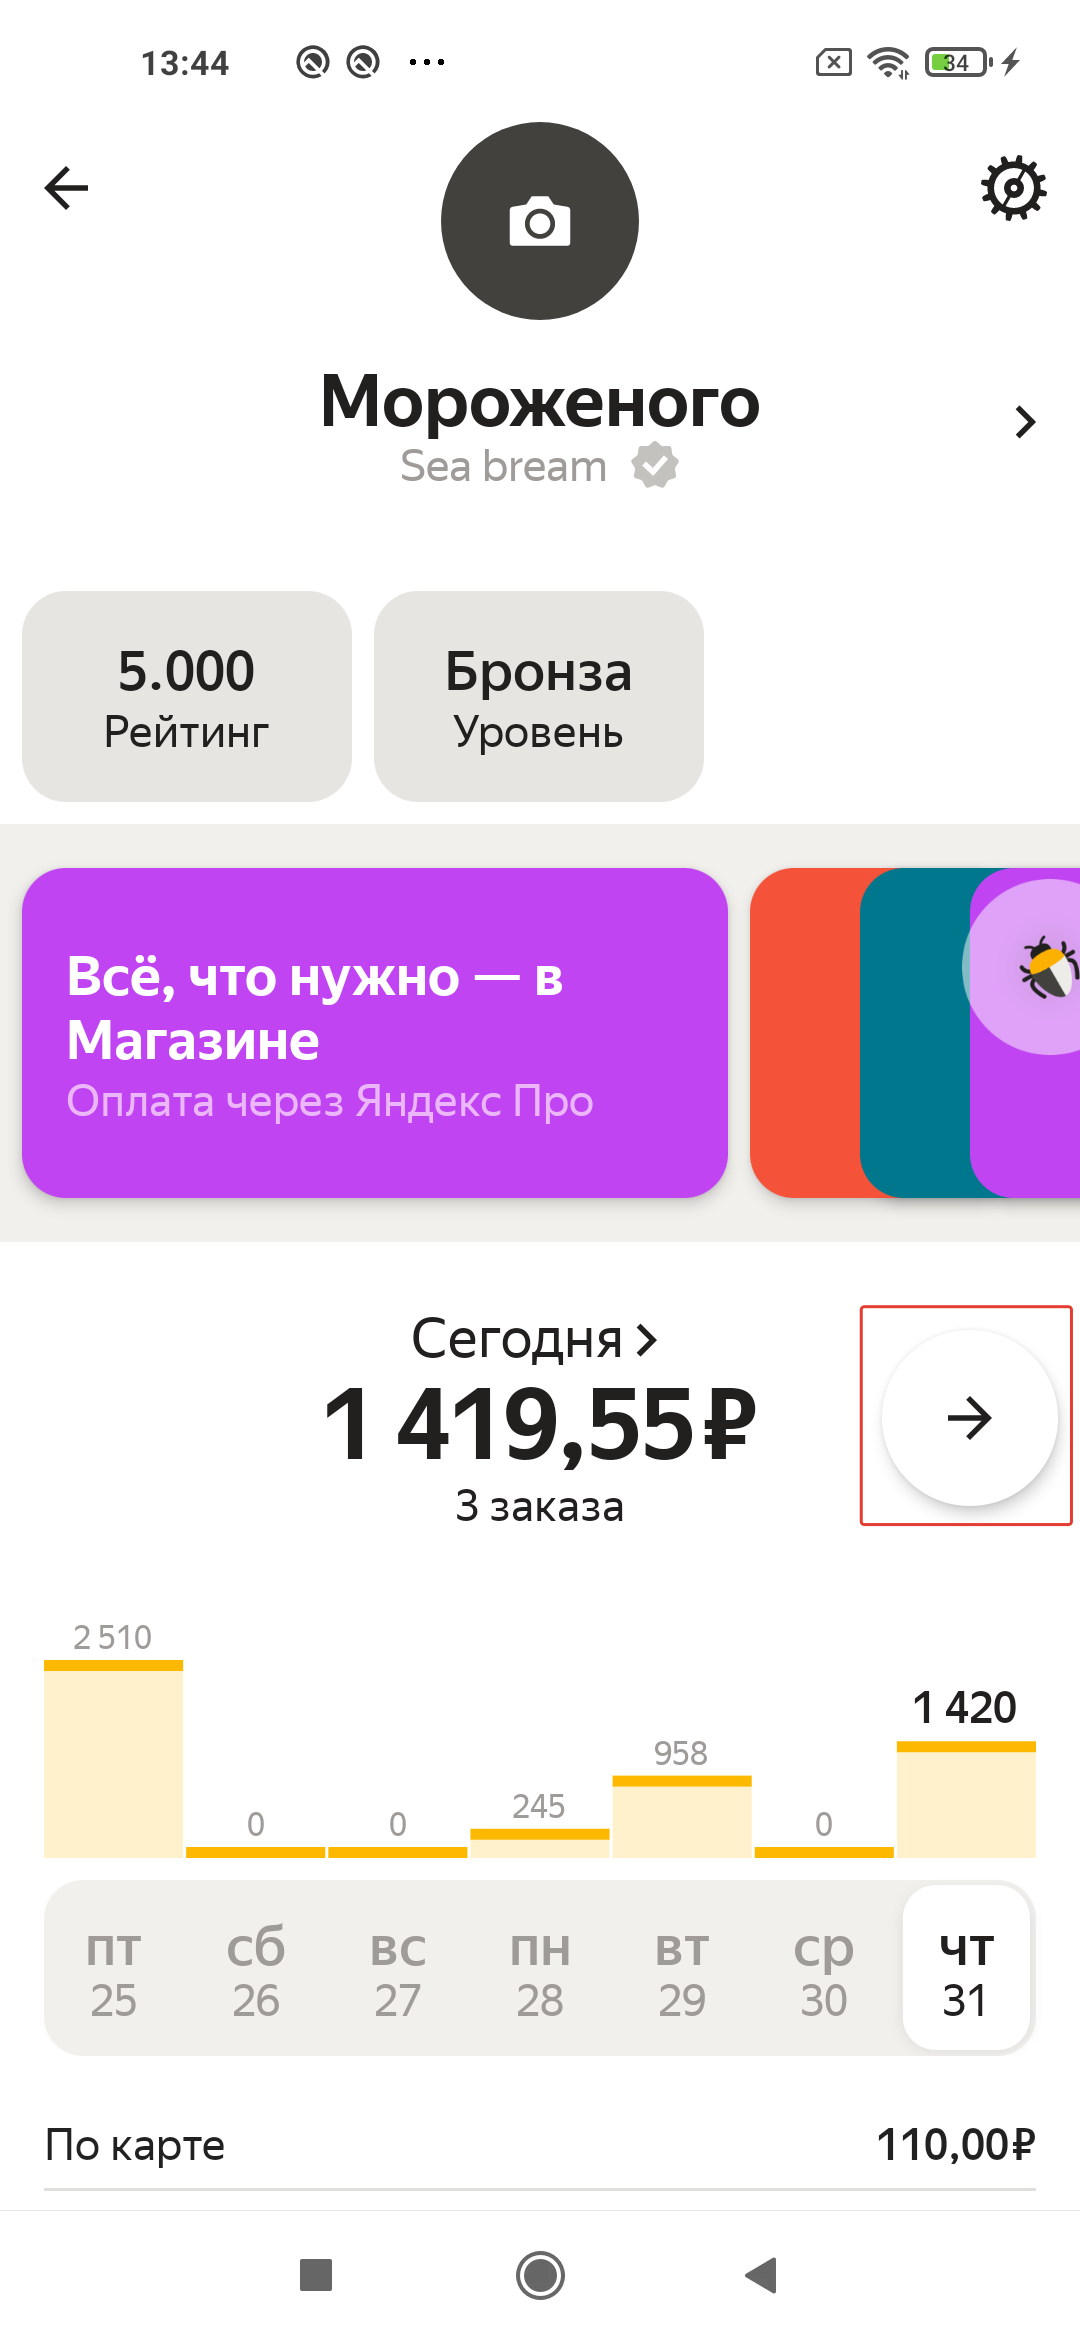 Зайдите в профиль Яндекс Про, промотайте до статистики и нажмите на стрелку справа от данных баланса